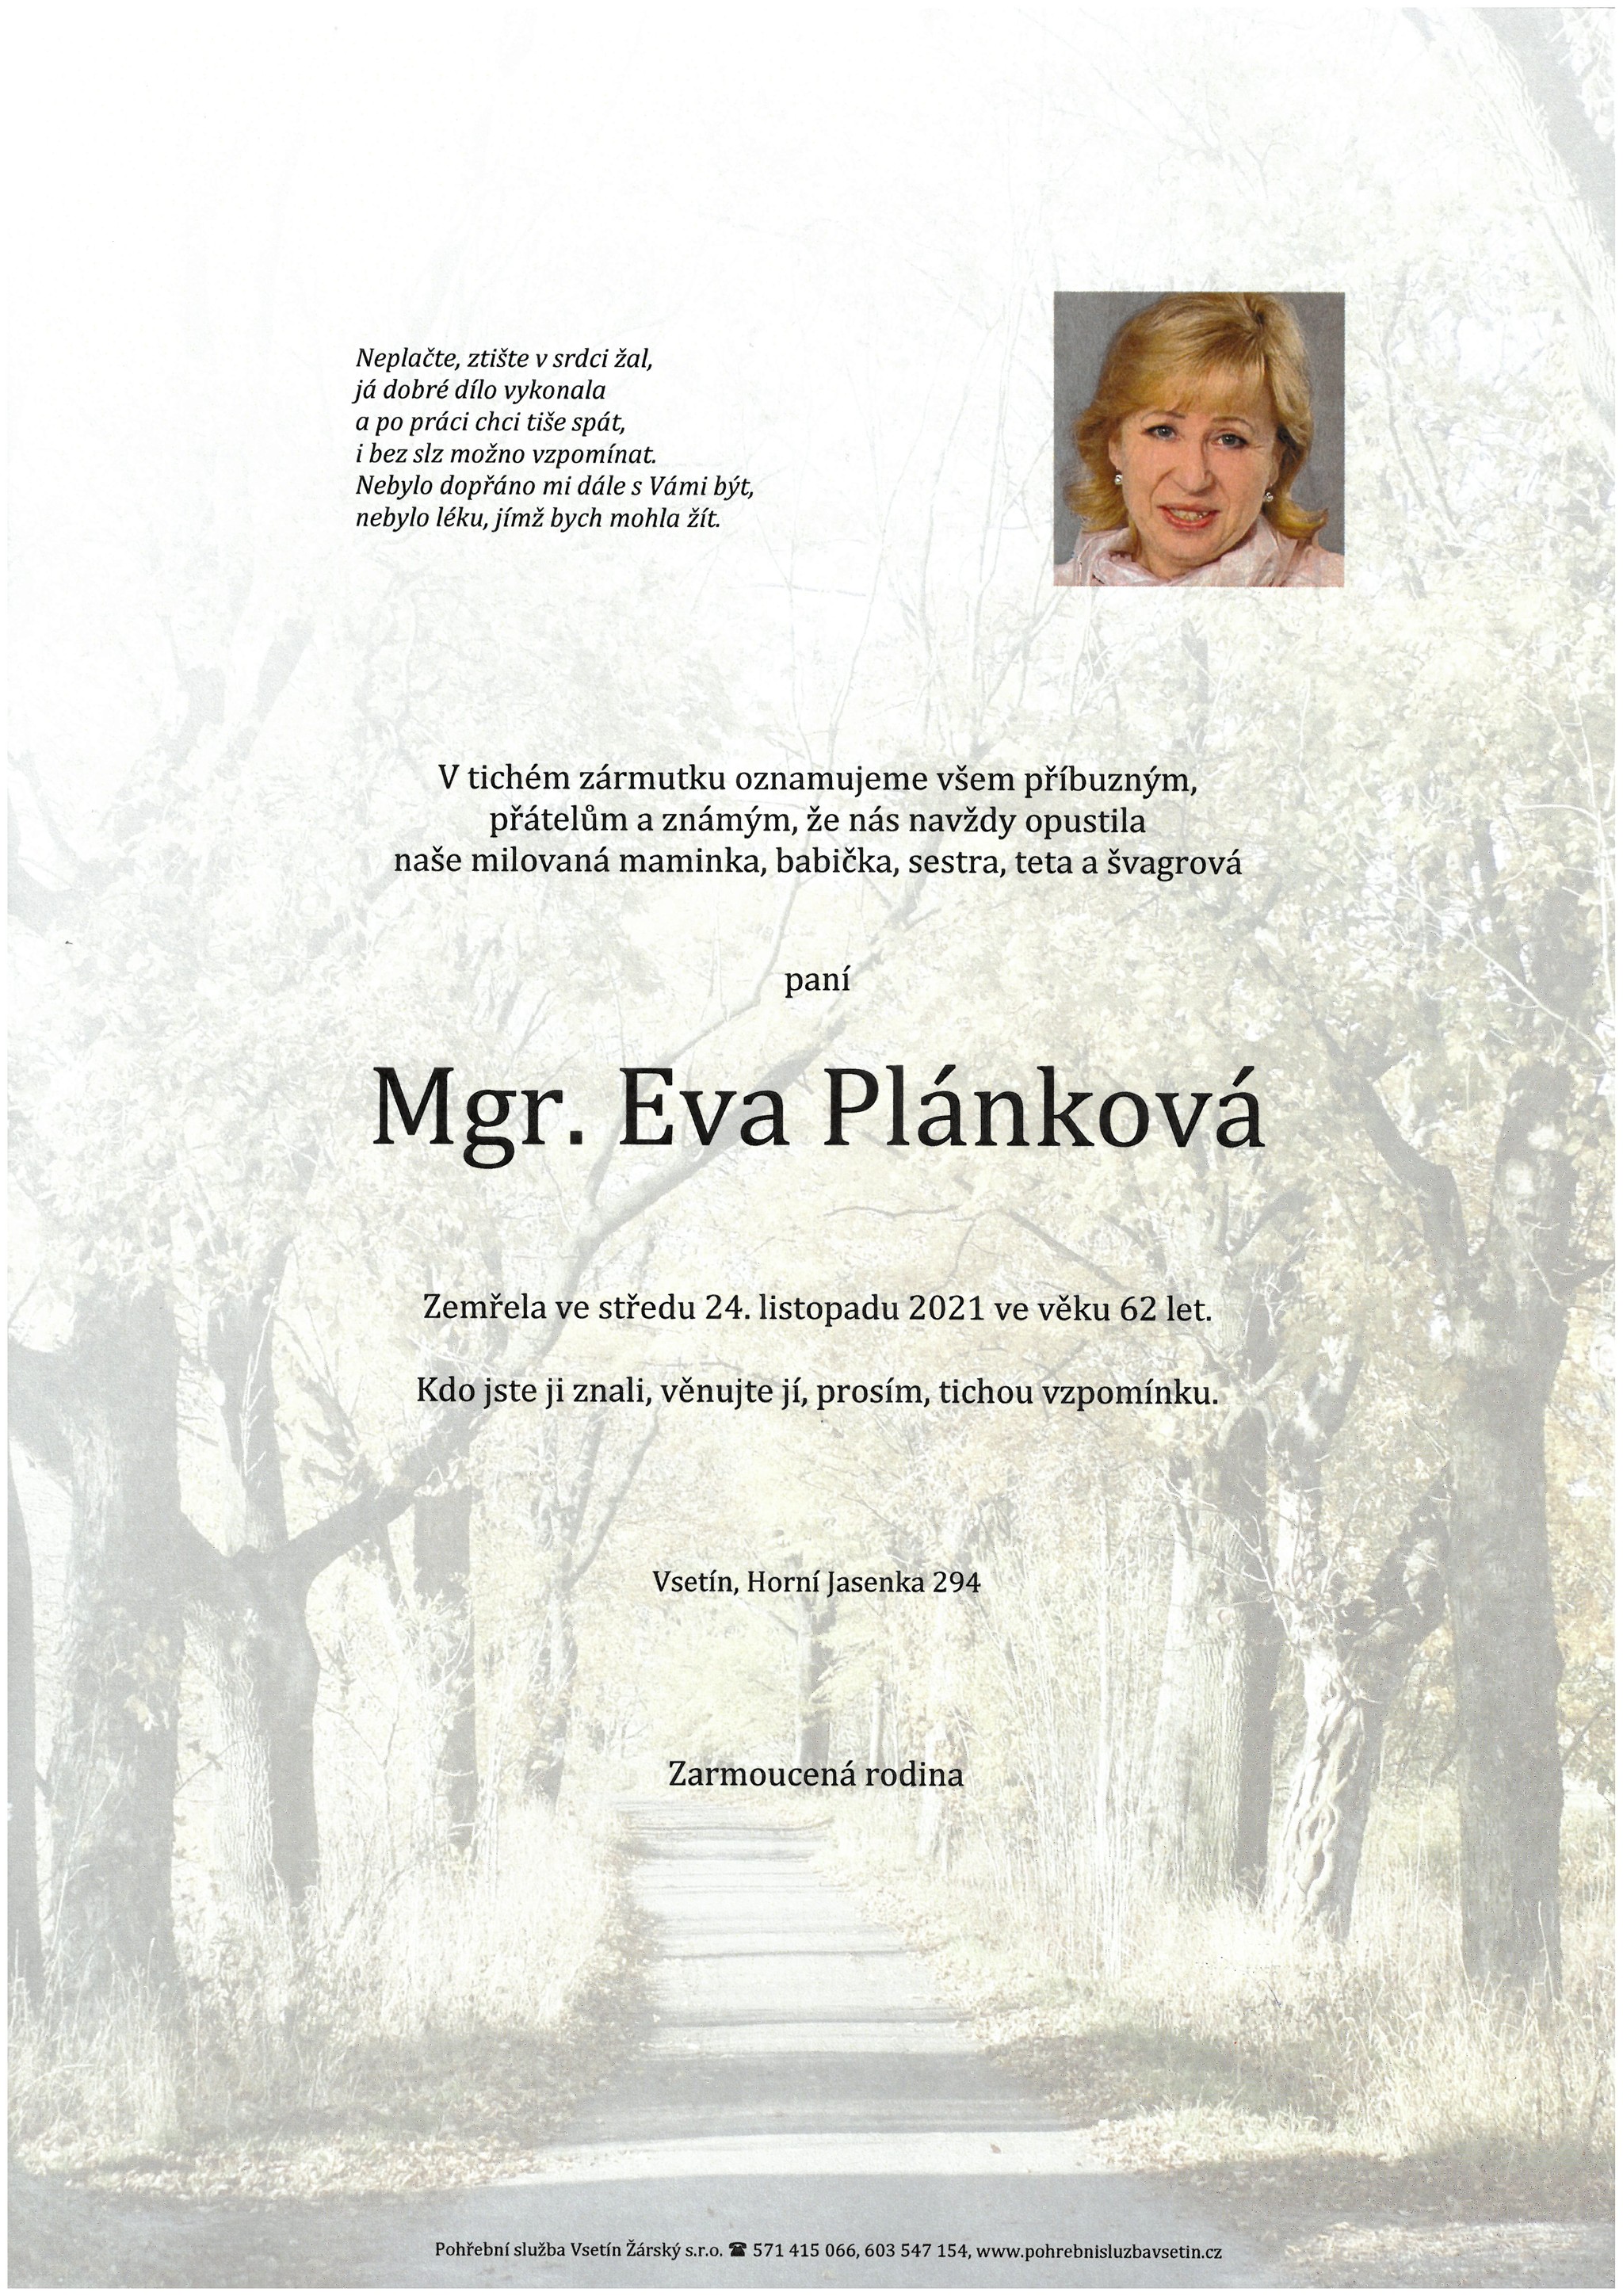 Mgr. Eva Plánková